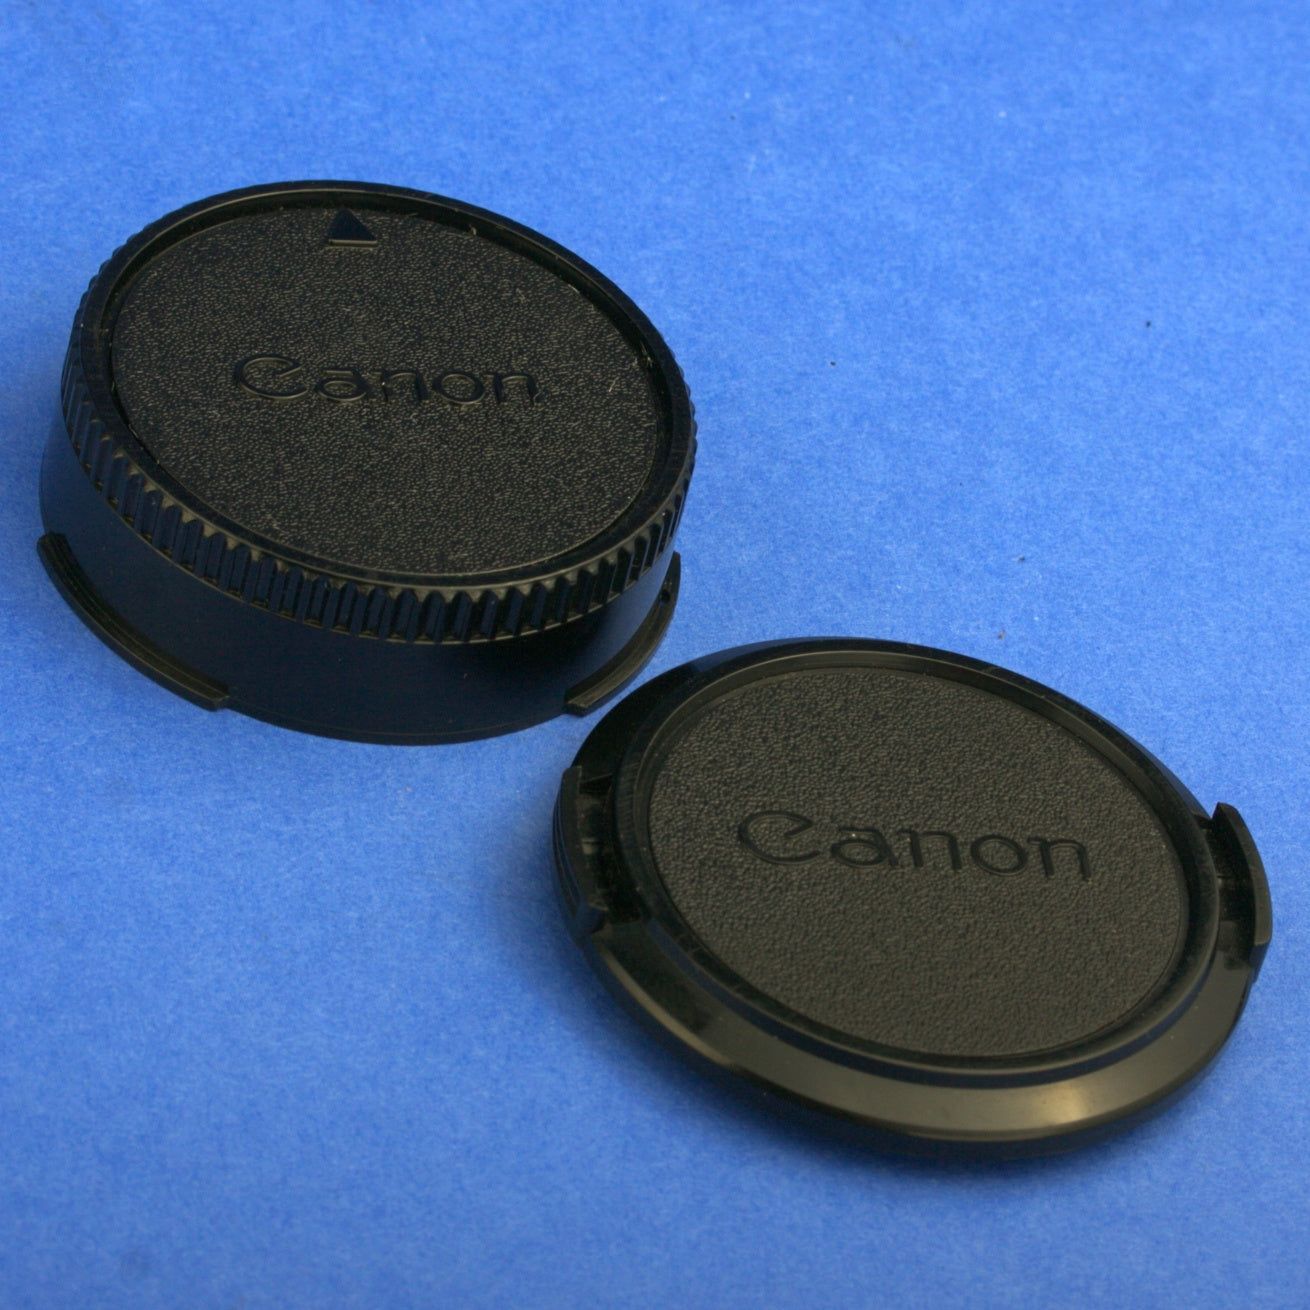 Canon FD 50mm 1.2 L Lens